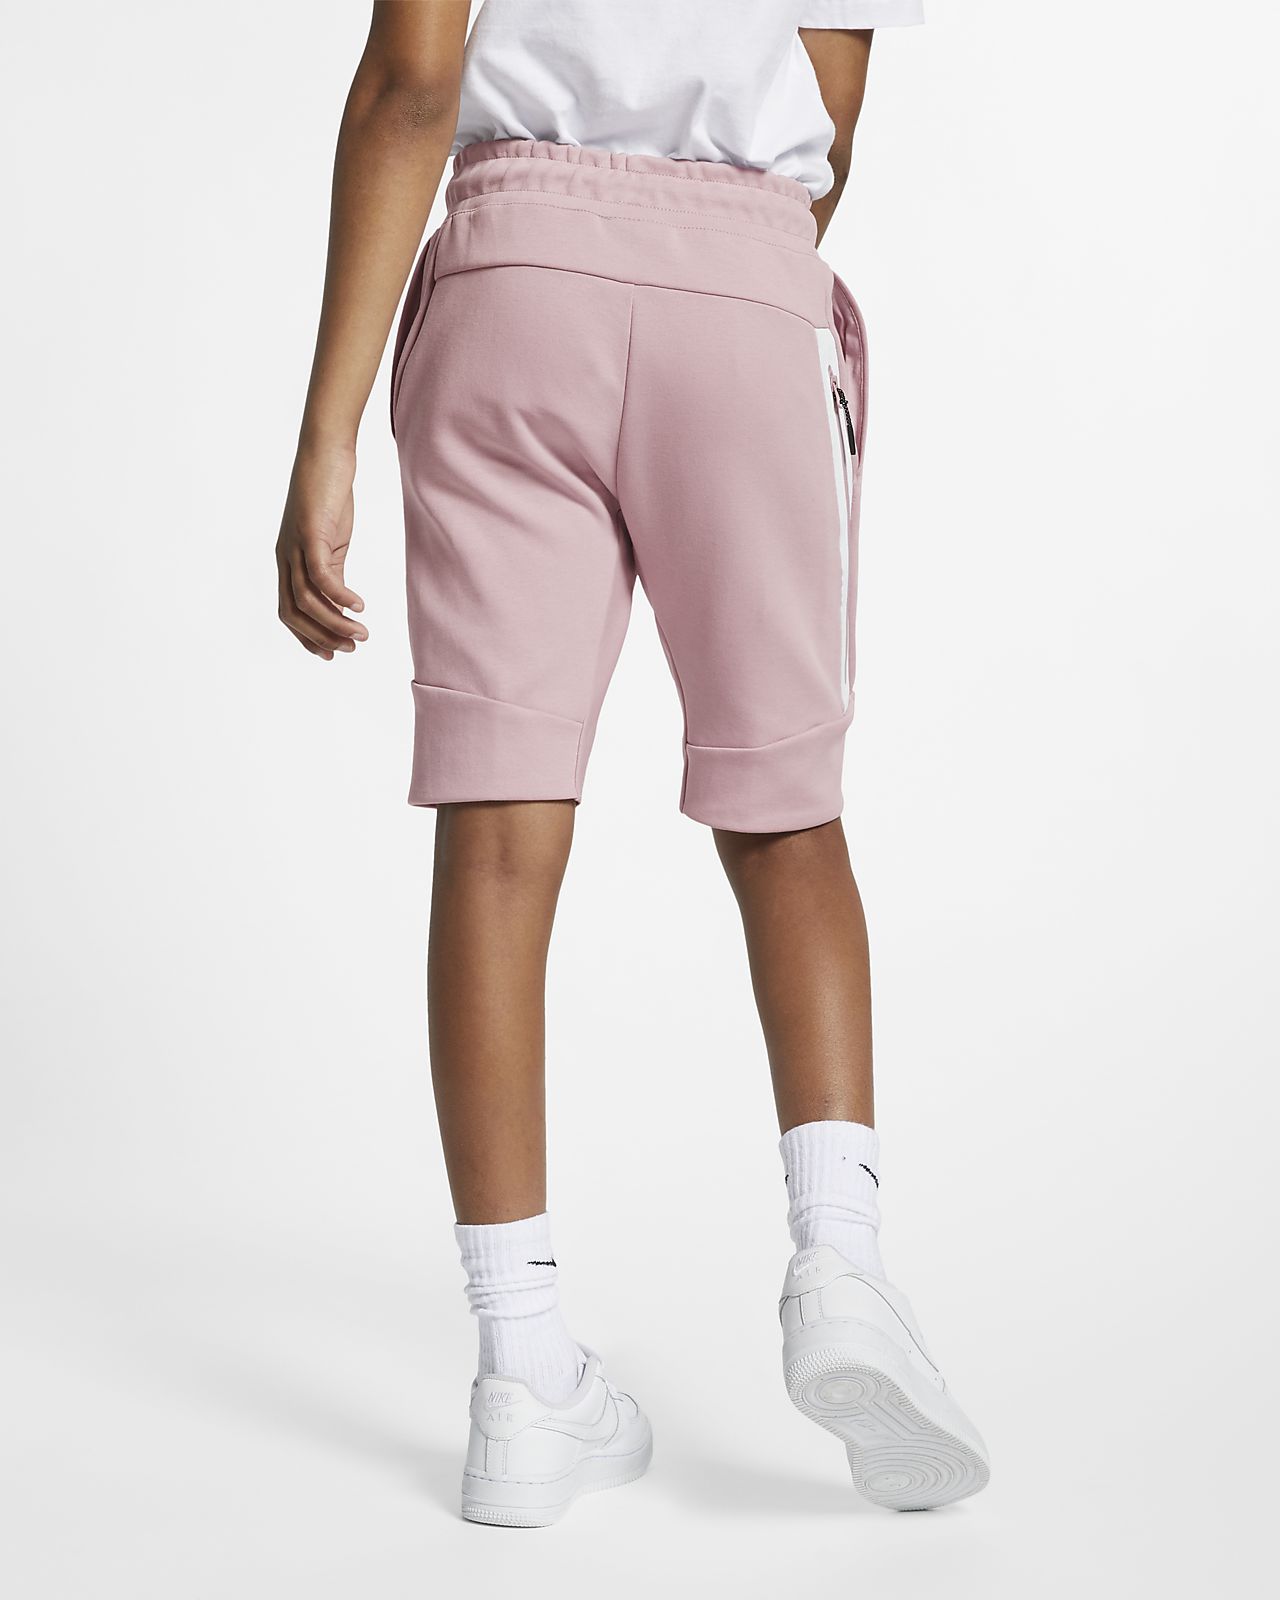 nike tech fleece shorts pink